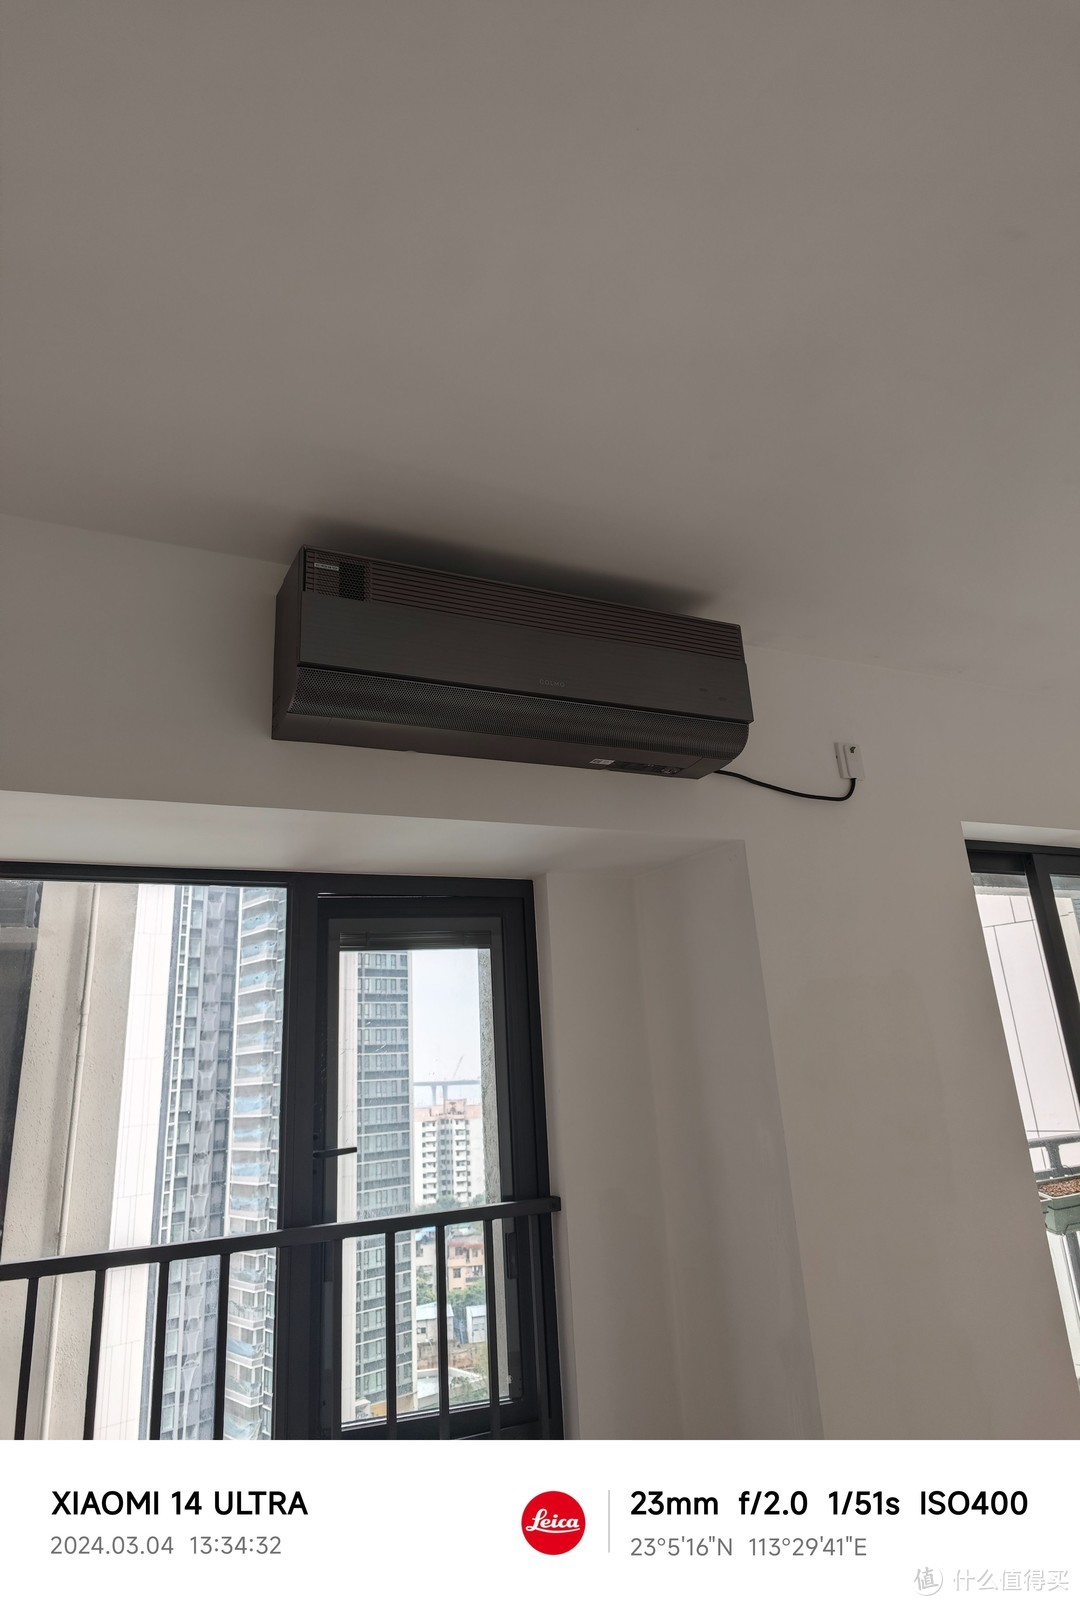 新房交付，空调应该怎么选？中央空调、立式空调和壁挂空调优劣分析浅谈